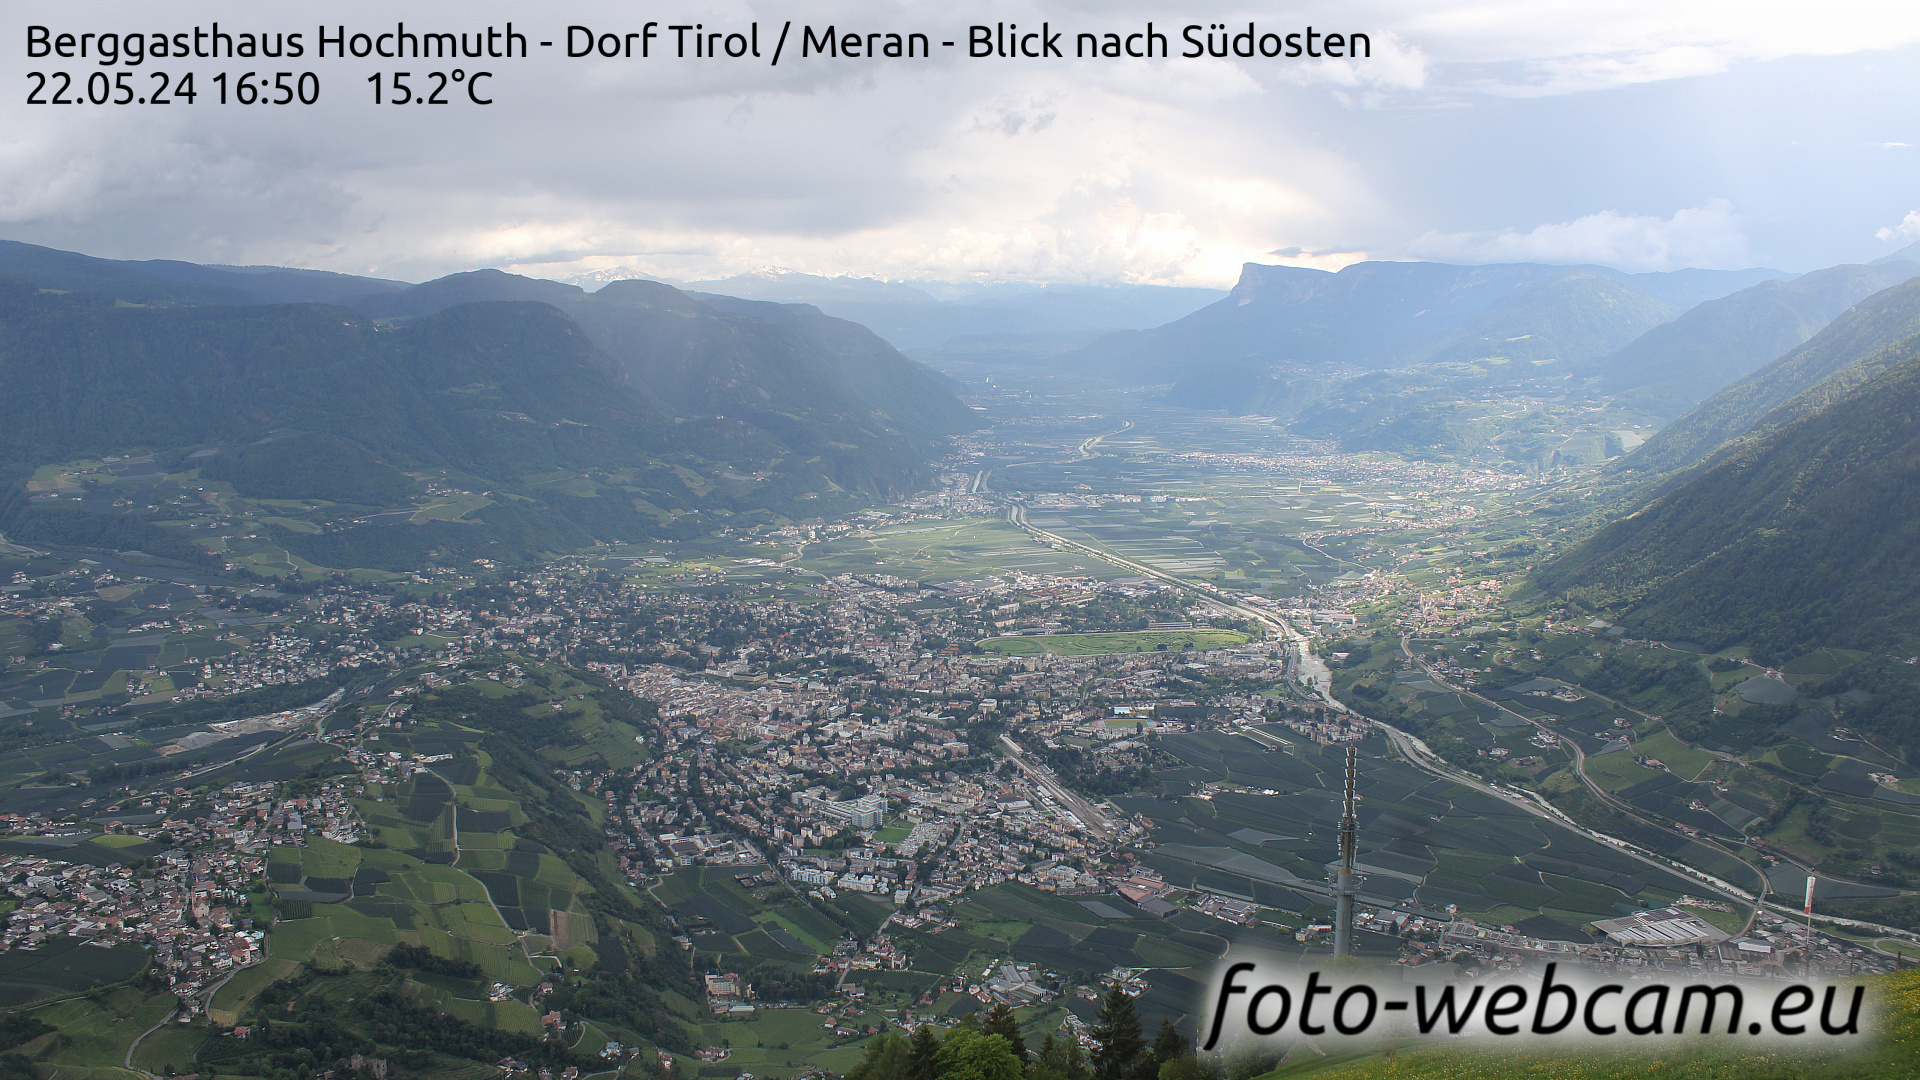 Dorf Tirol Tir. 16:56